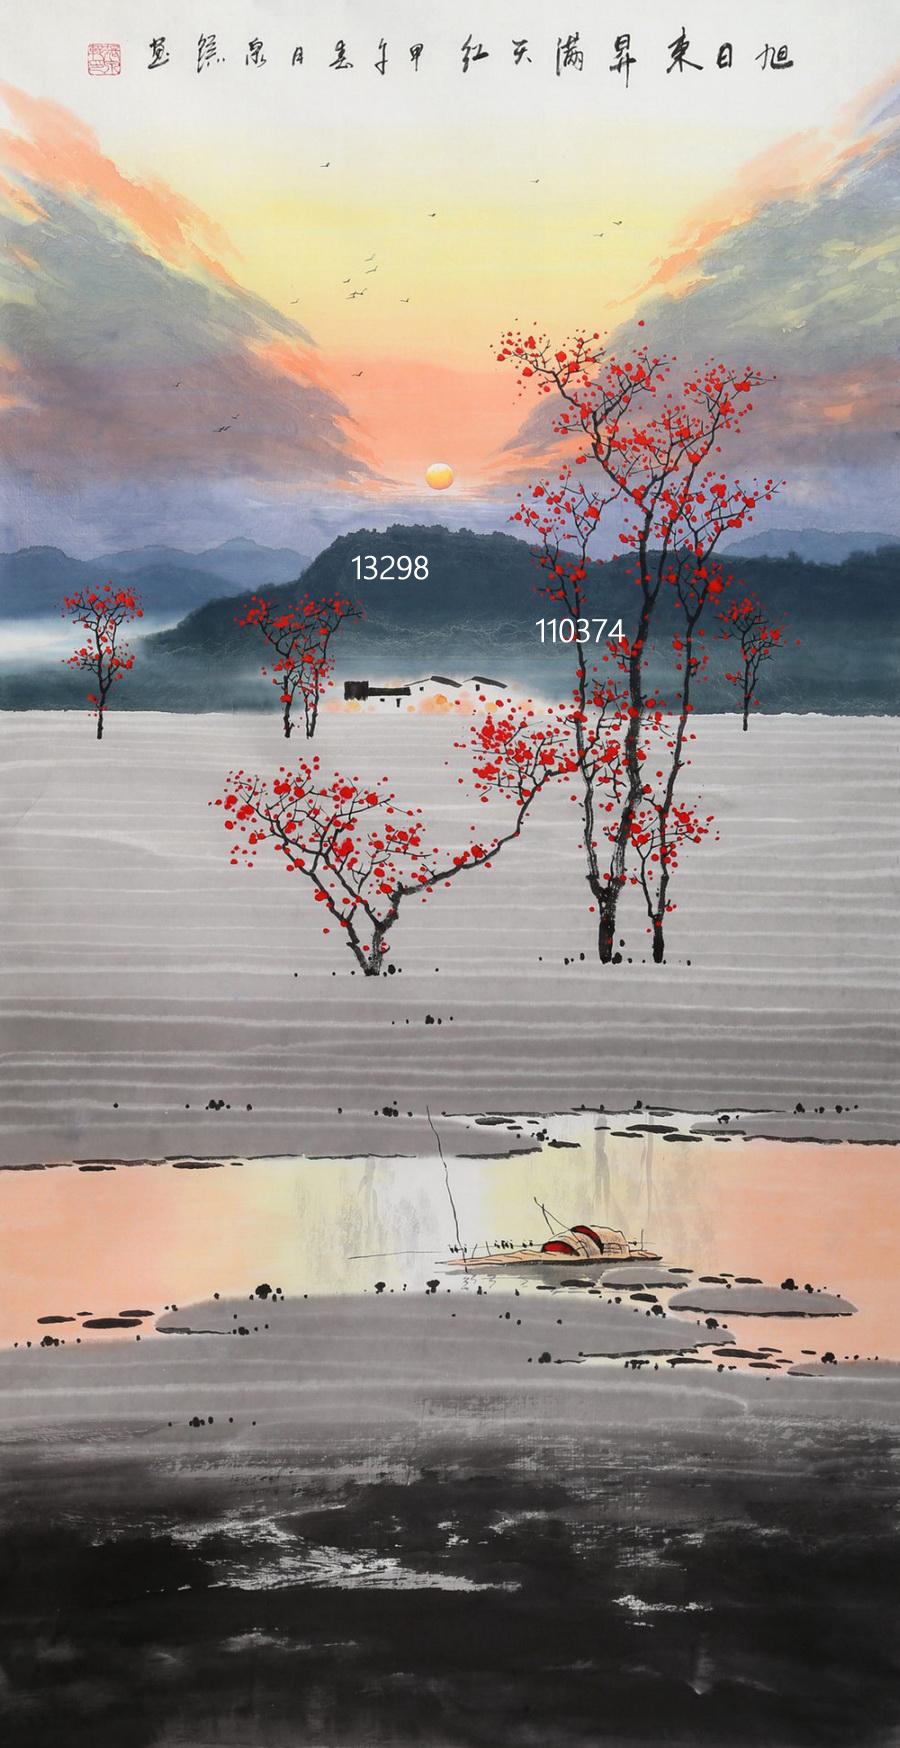 作为广西桂林的画家,张泉踪对漓江山水情有独钟